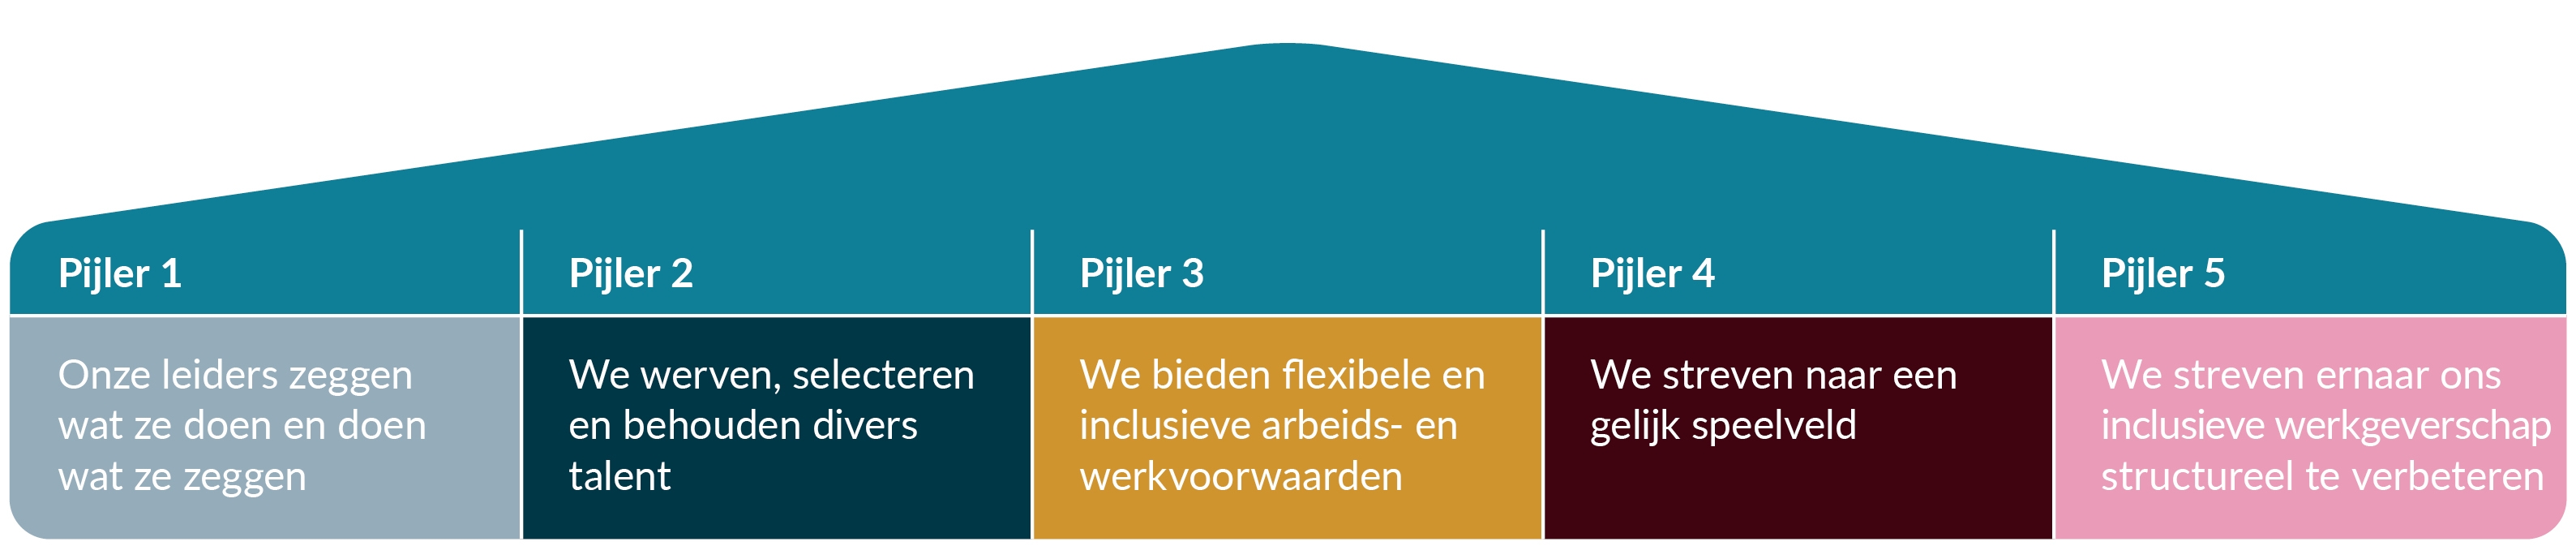 Vijf pijlers voor het benutten van het diversiteits- en inclusiepotentieel